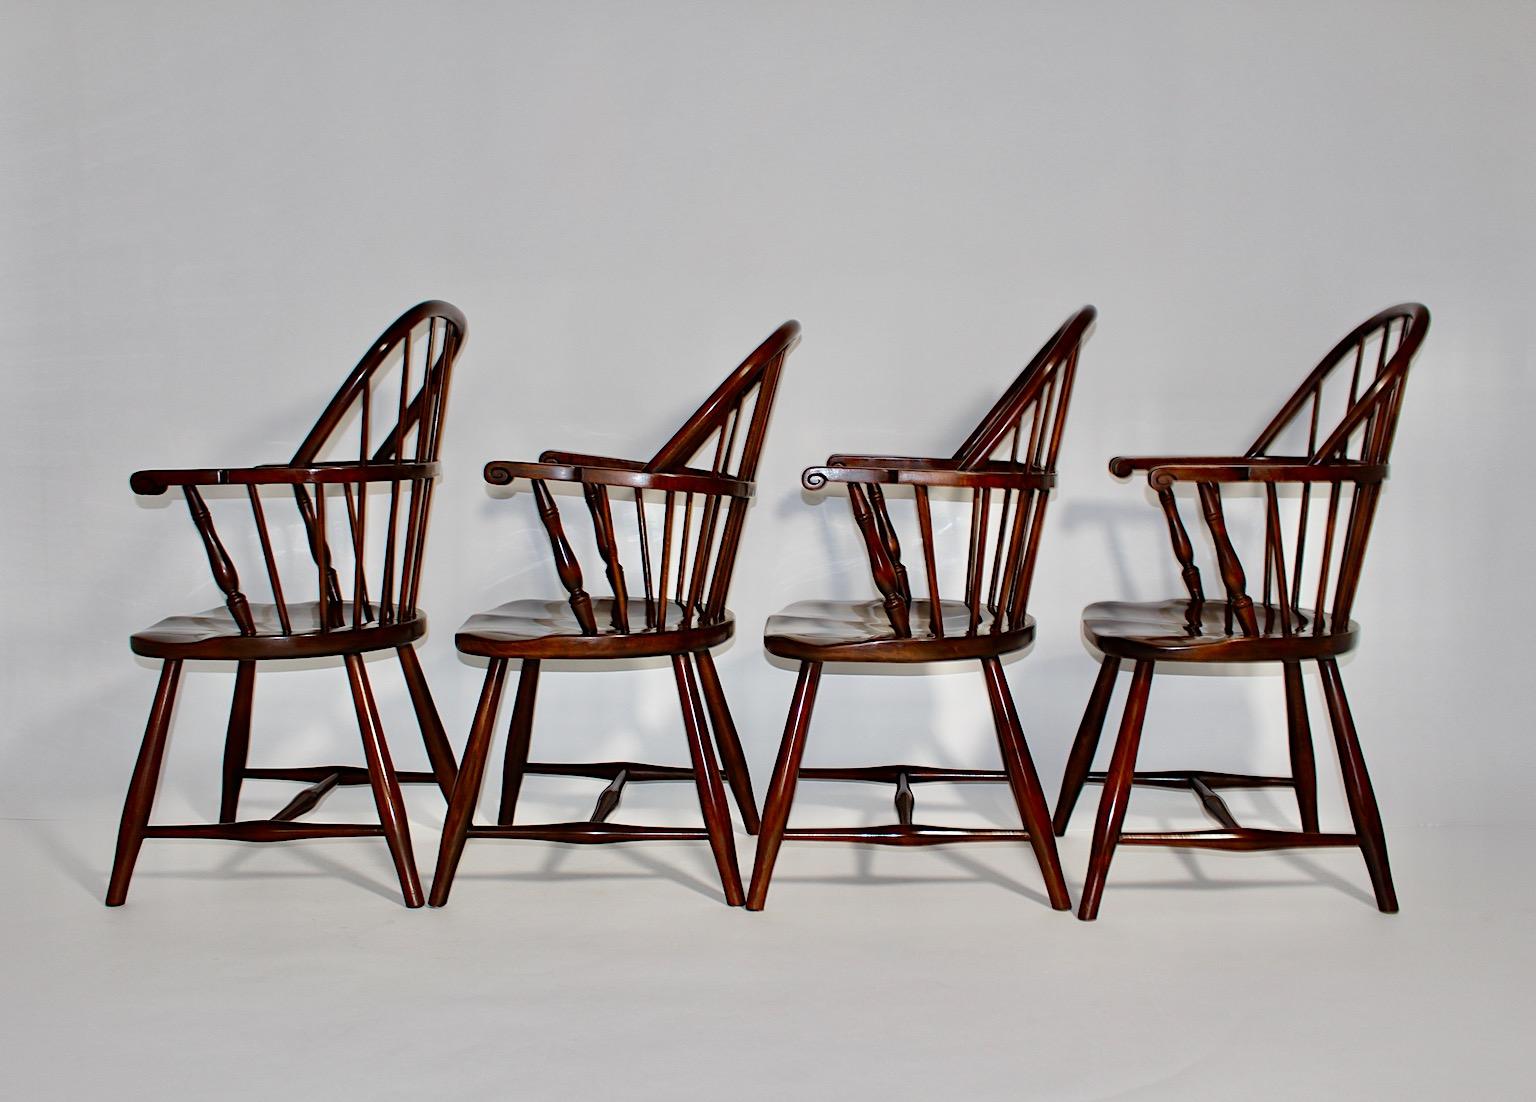 Art Deco Vintage vier ( 4 ) Esszimmerstühle oder Sessel aus braun gebeizter Buche Design zugeschrieben Josef Frank ausgeführt von der Firma Thonet um 1925 Österreich.
Jeder Stuhl ist mit einem Firmenetikett unter dem Sitz versehen.
Diese vier ( 4 )